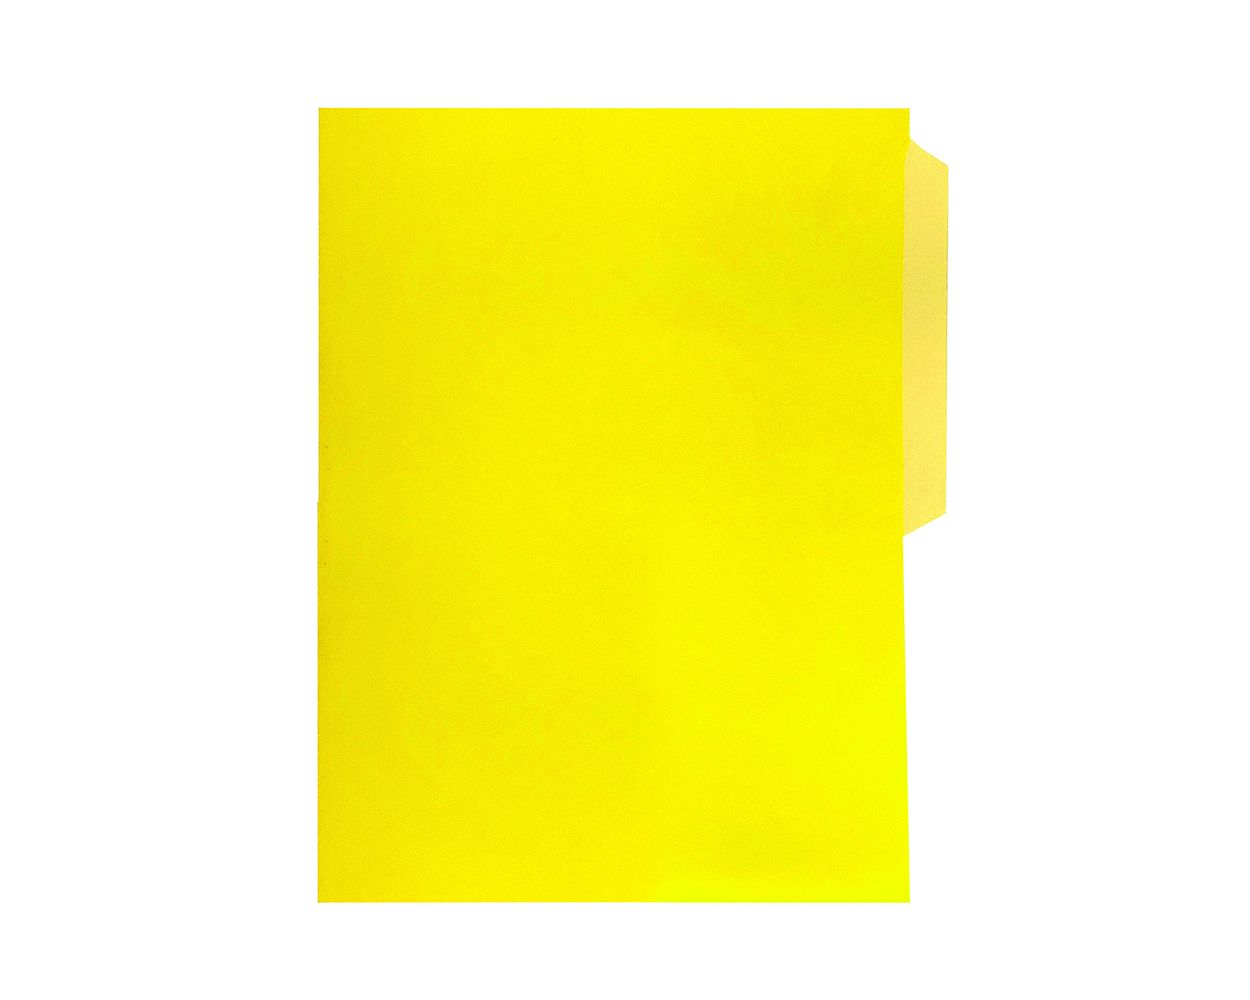 Fólder tamaño oficio amarillo c/100 Fólder de 1/2 ceja, color amarillo, Fortec, elaborado en cartulina bristol de 162 grs / 9.5 pts tamaño oficio, medidas: 23.8 X 34.5 cm, suaje lateral y superior para broche de 8 cm y ceja redondeada, 1 paquete con 100 fólders. - FORTEC